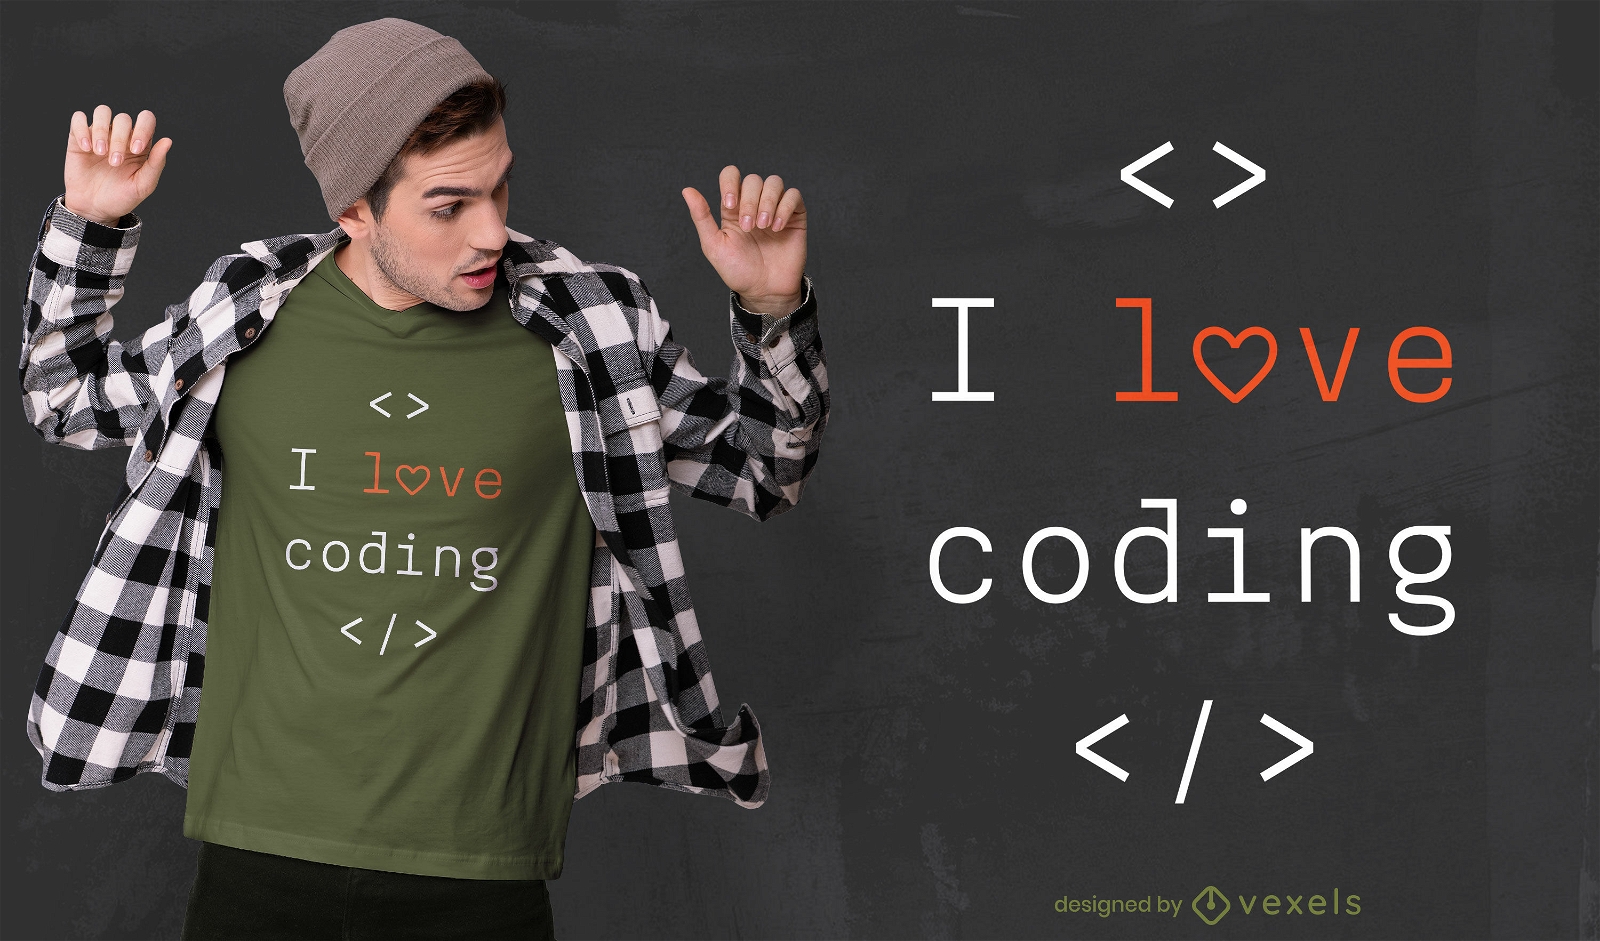 Me encanta codificar el dise?o de camisetas.